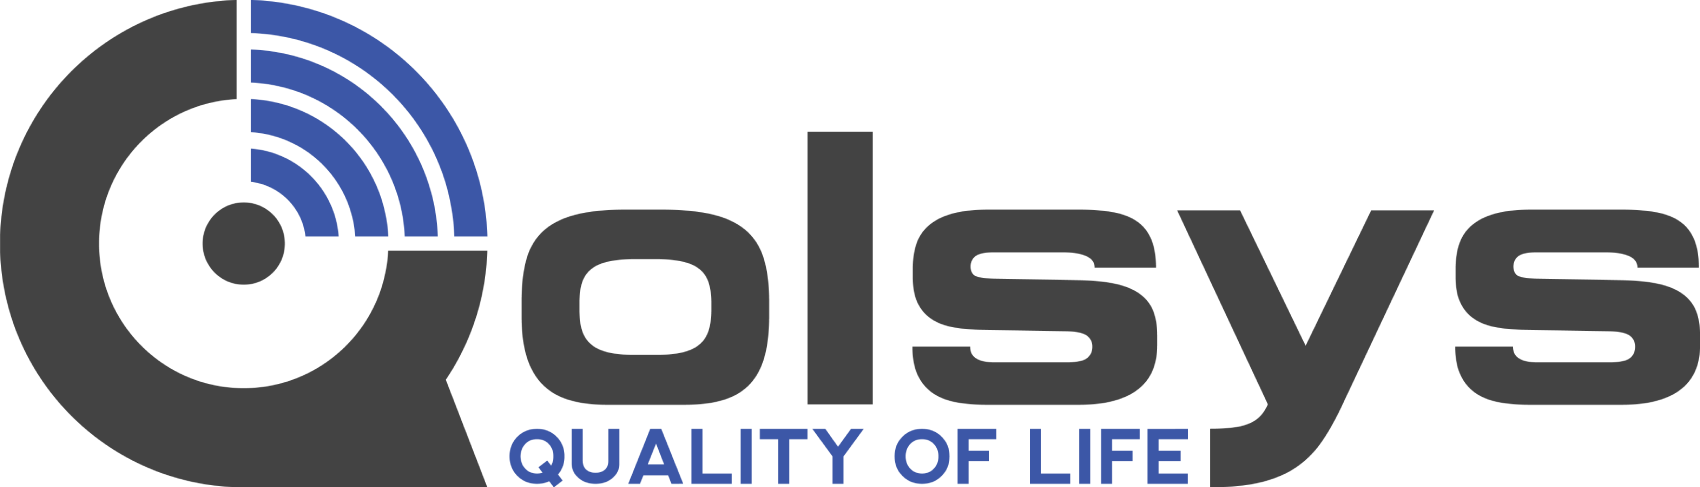 qolsys-logo